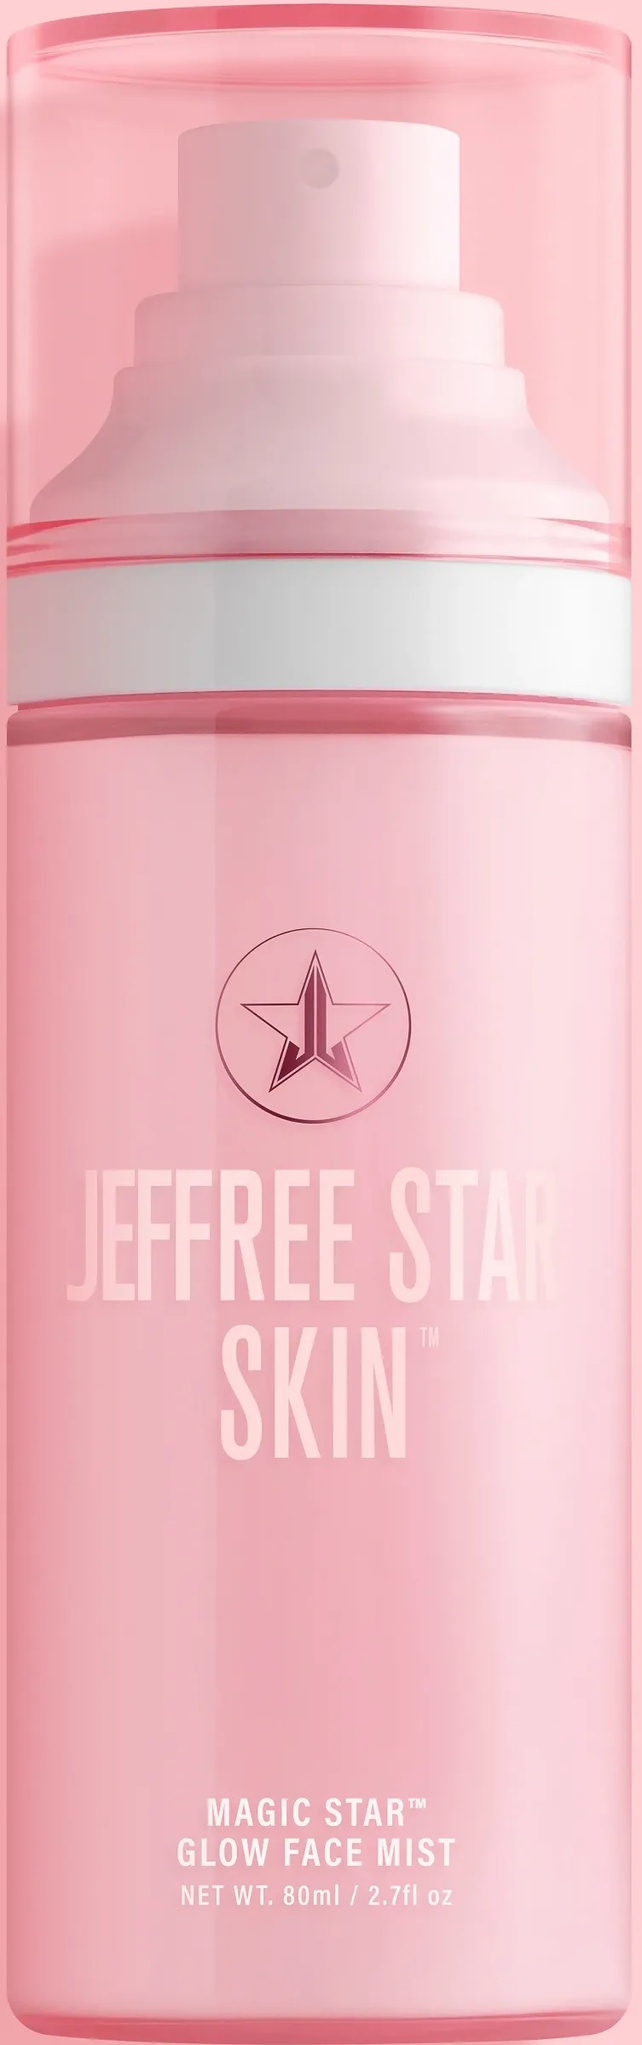 Jeffree Star skin Magic Star™ Glow Face Mist